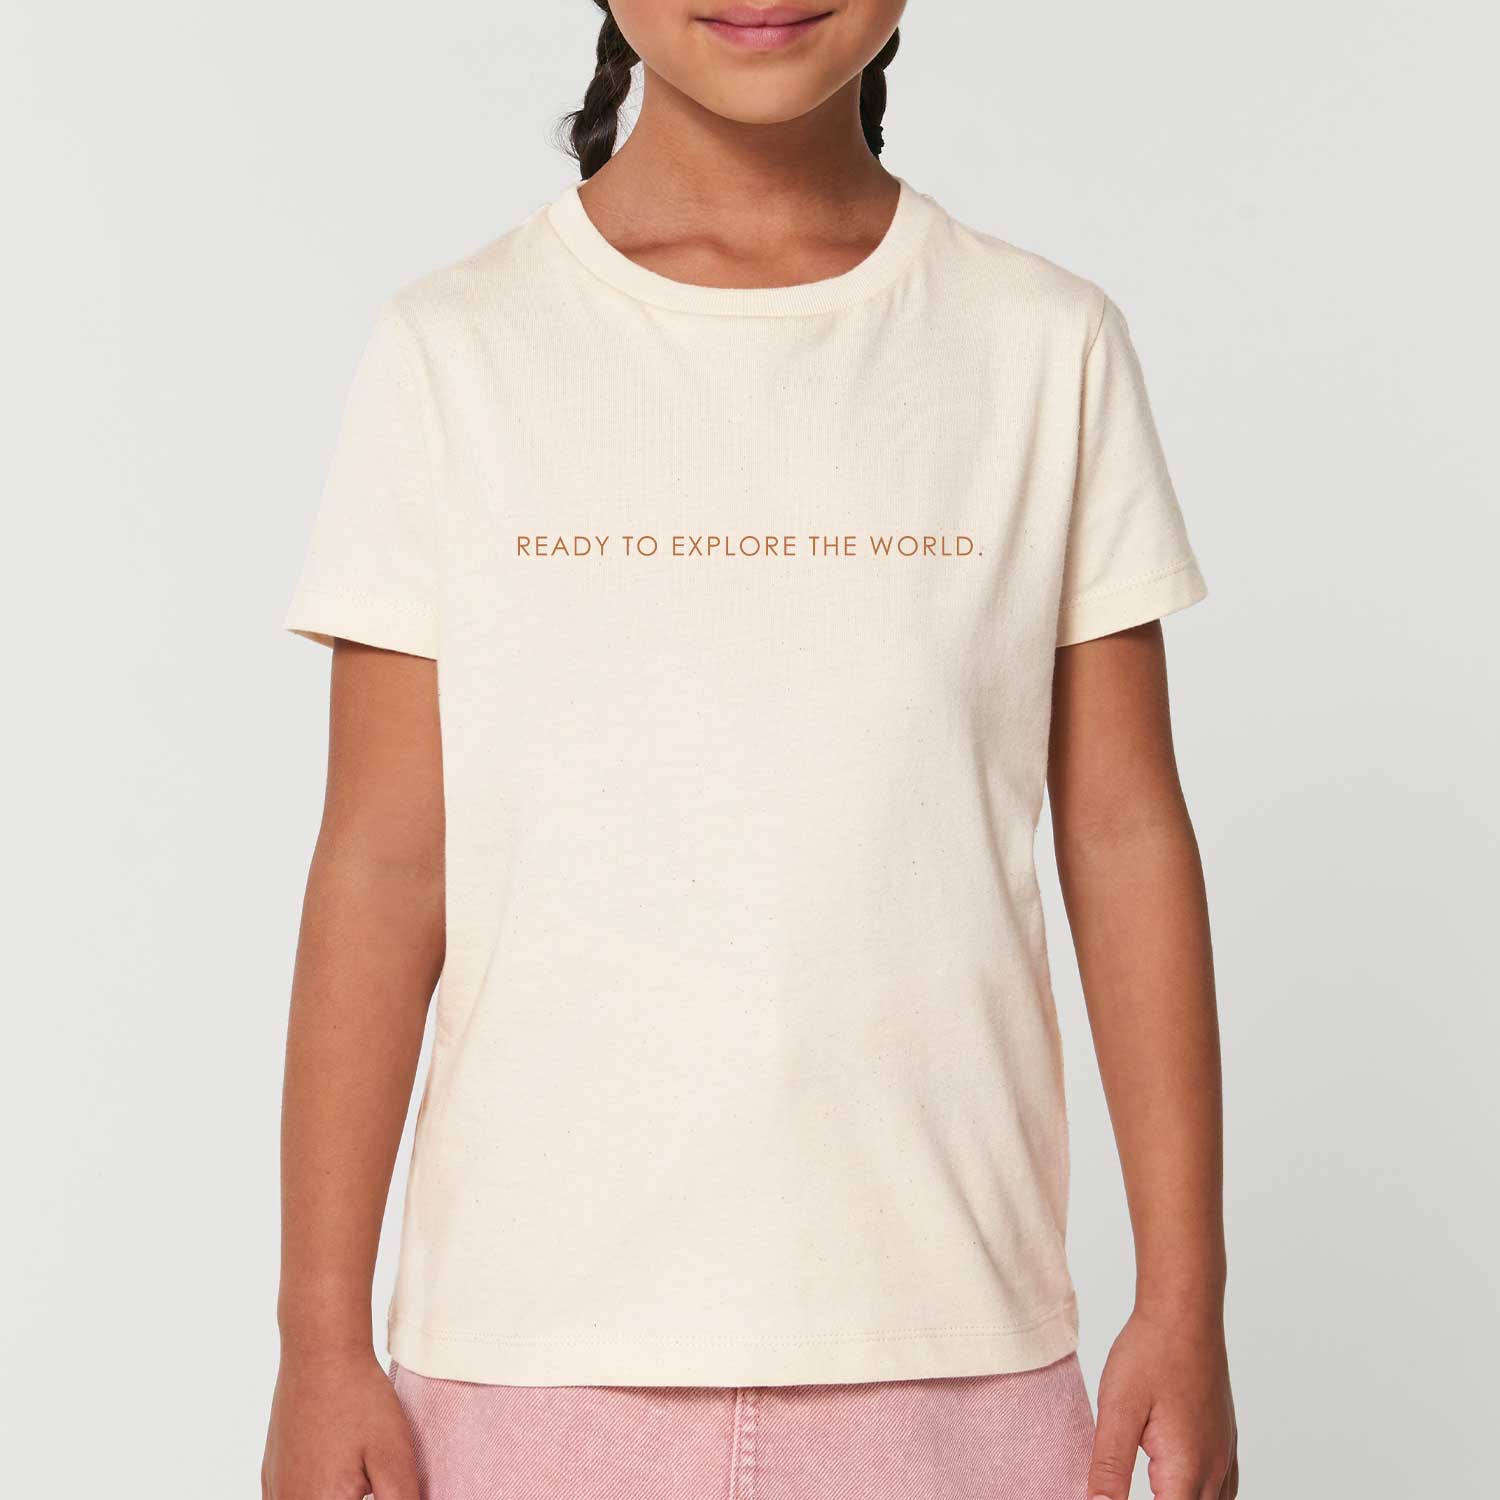 Kids T-Shirt - Explore the world